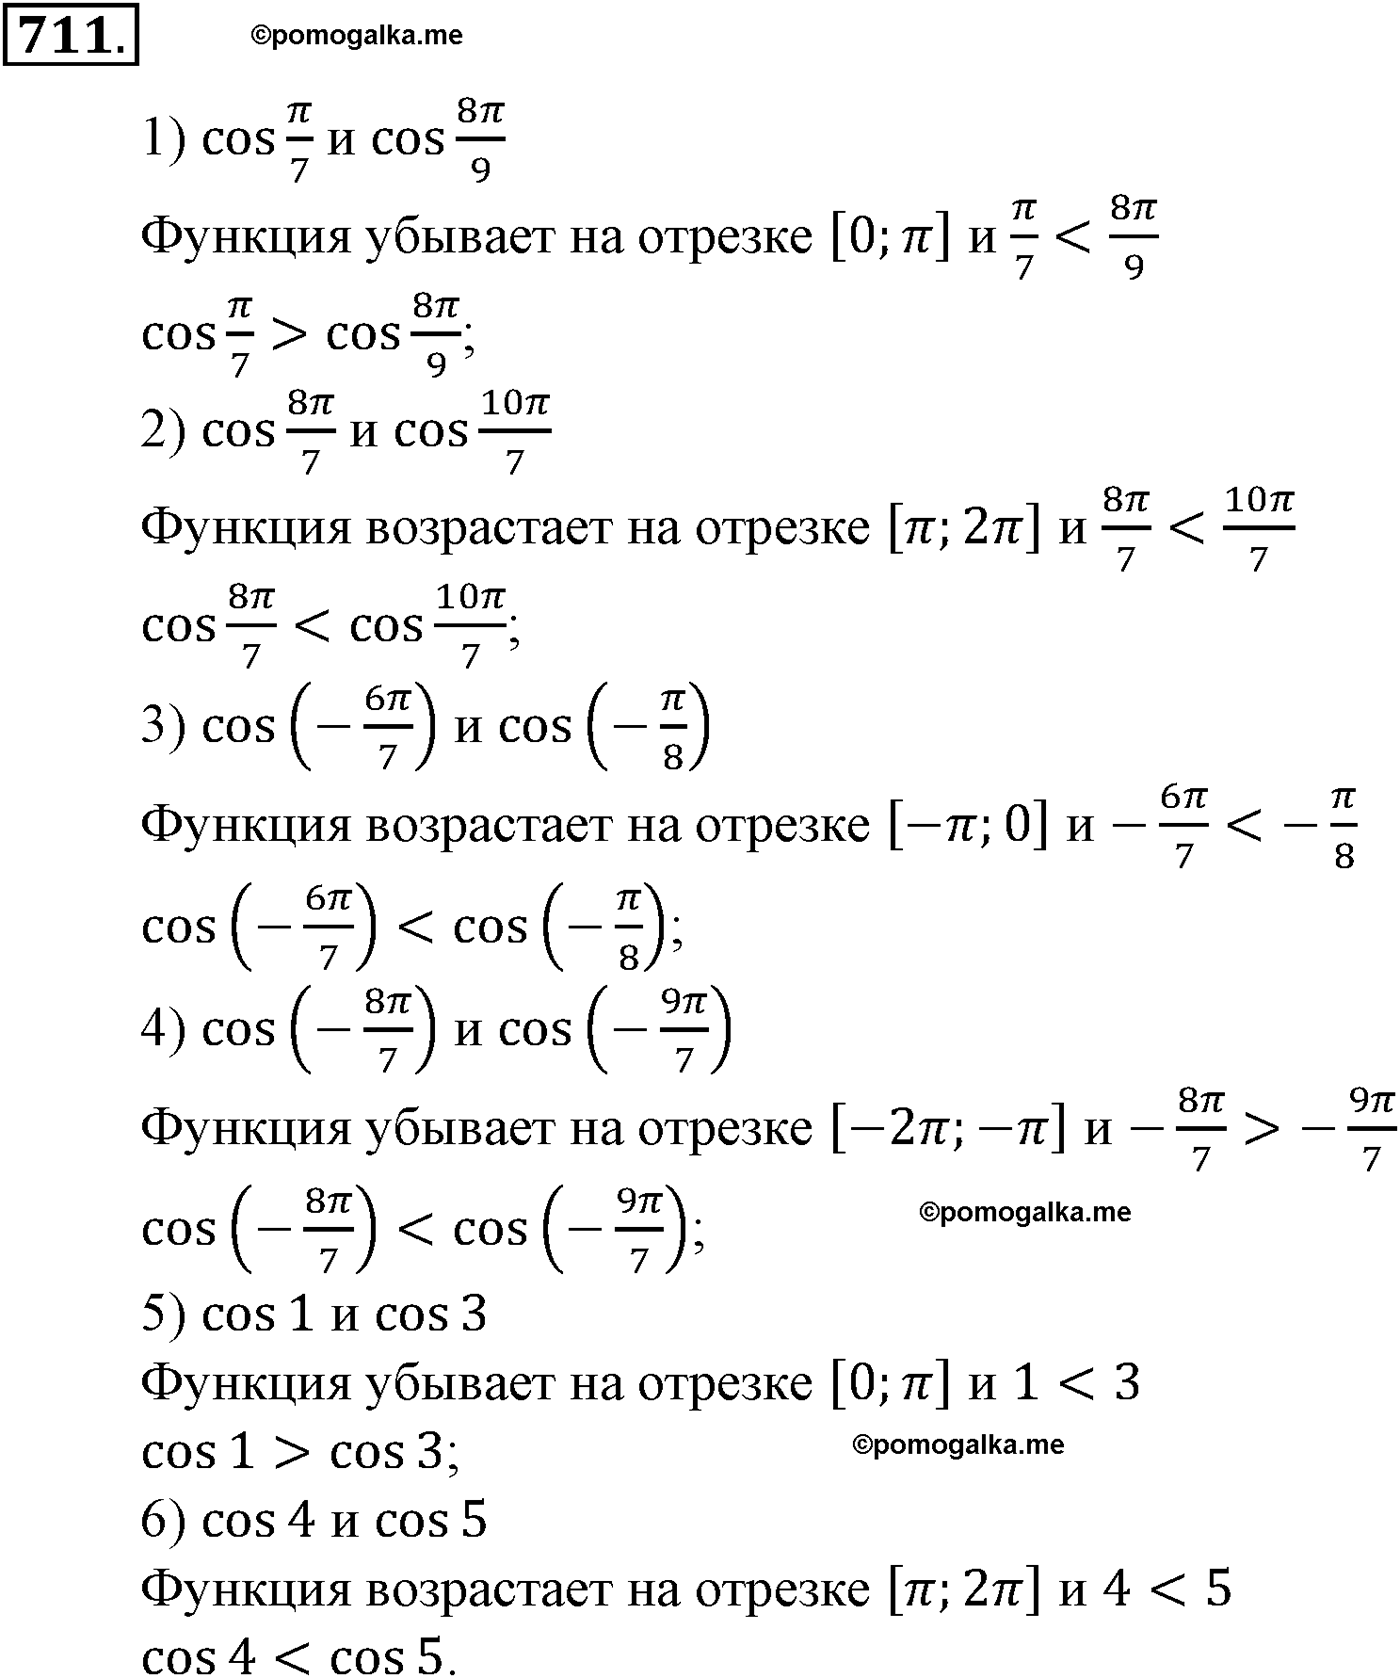 разбор задачи №711 по алгебре за 10-11 класс из учебника Алимова, Колягина